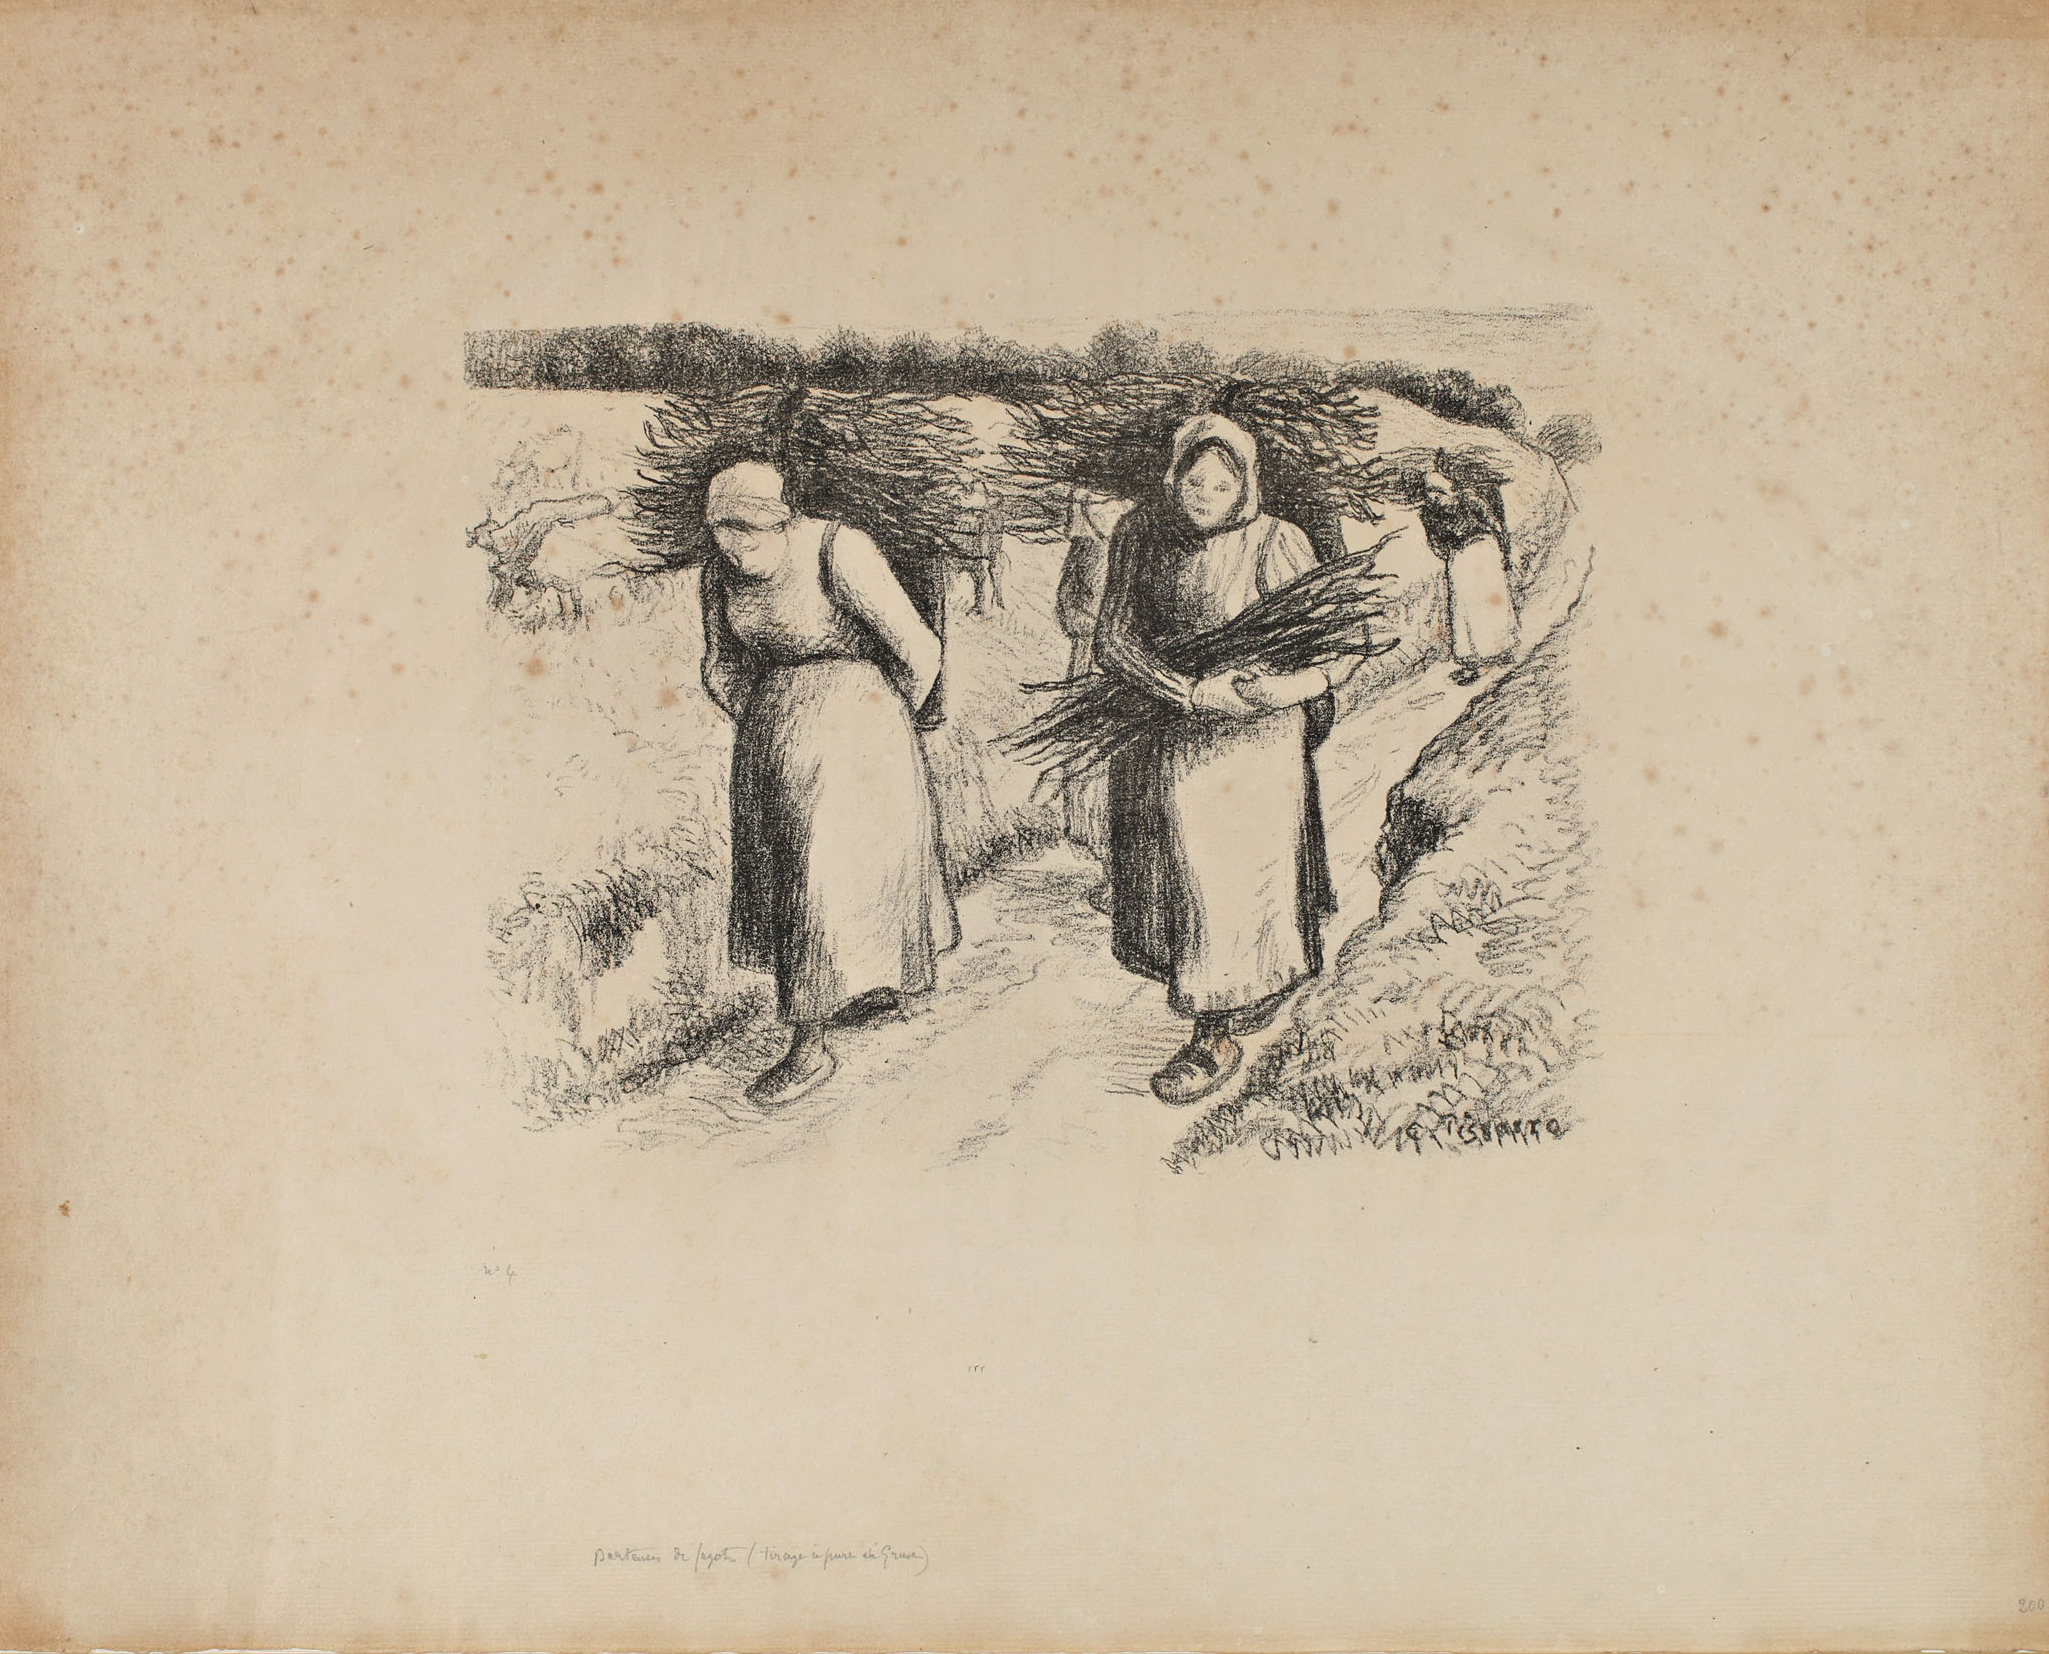 Pissarro, Porteuses de Fagots, lithograph